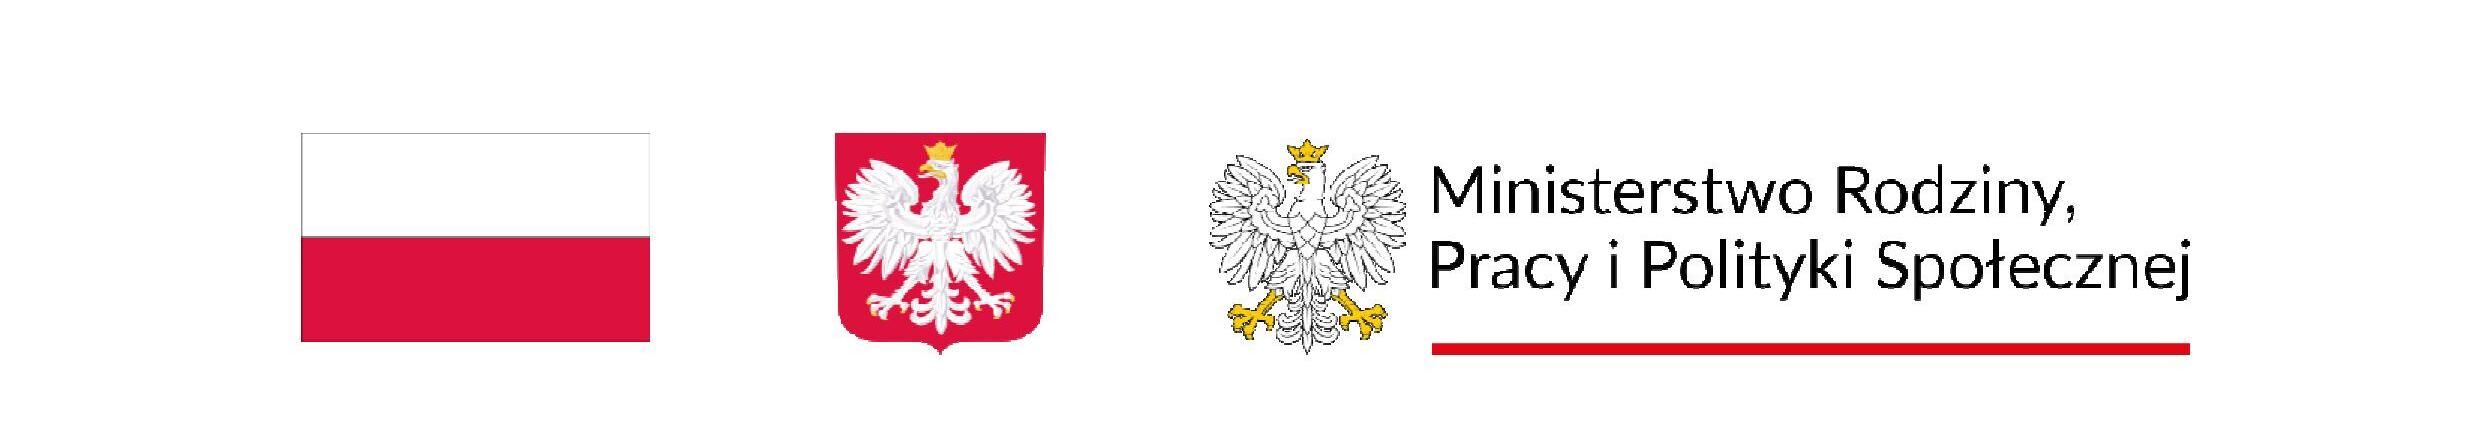 Grafika zawiera od lewo flagę Polski, godło oraz logo Ministerstwa Rodziny, Pracy i Polityki Społecznej